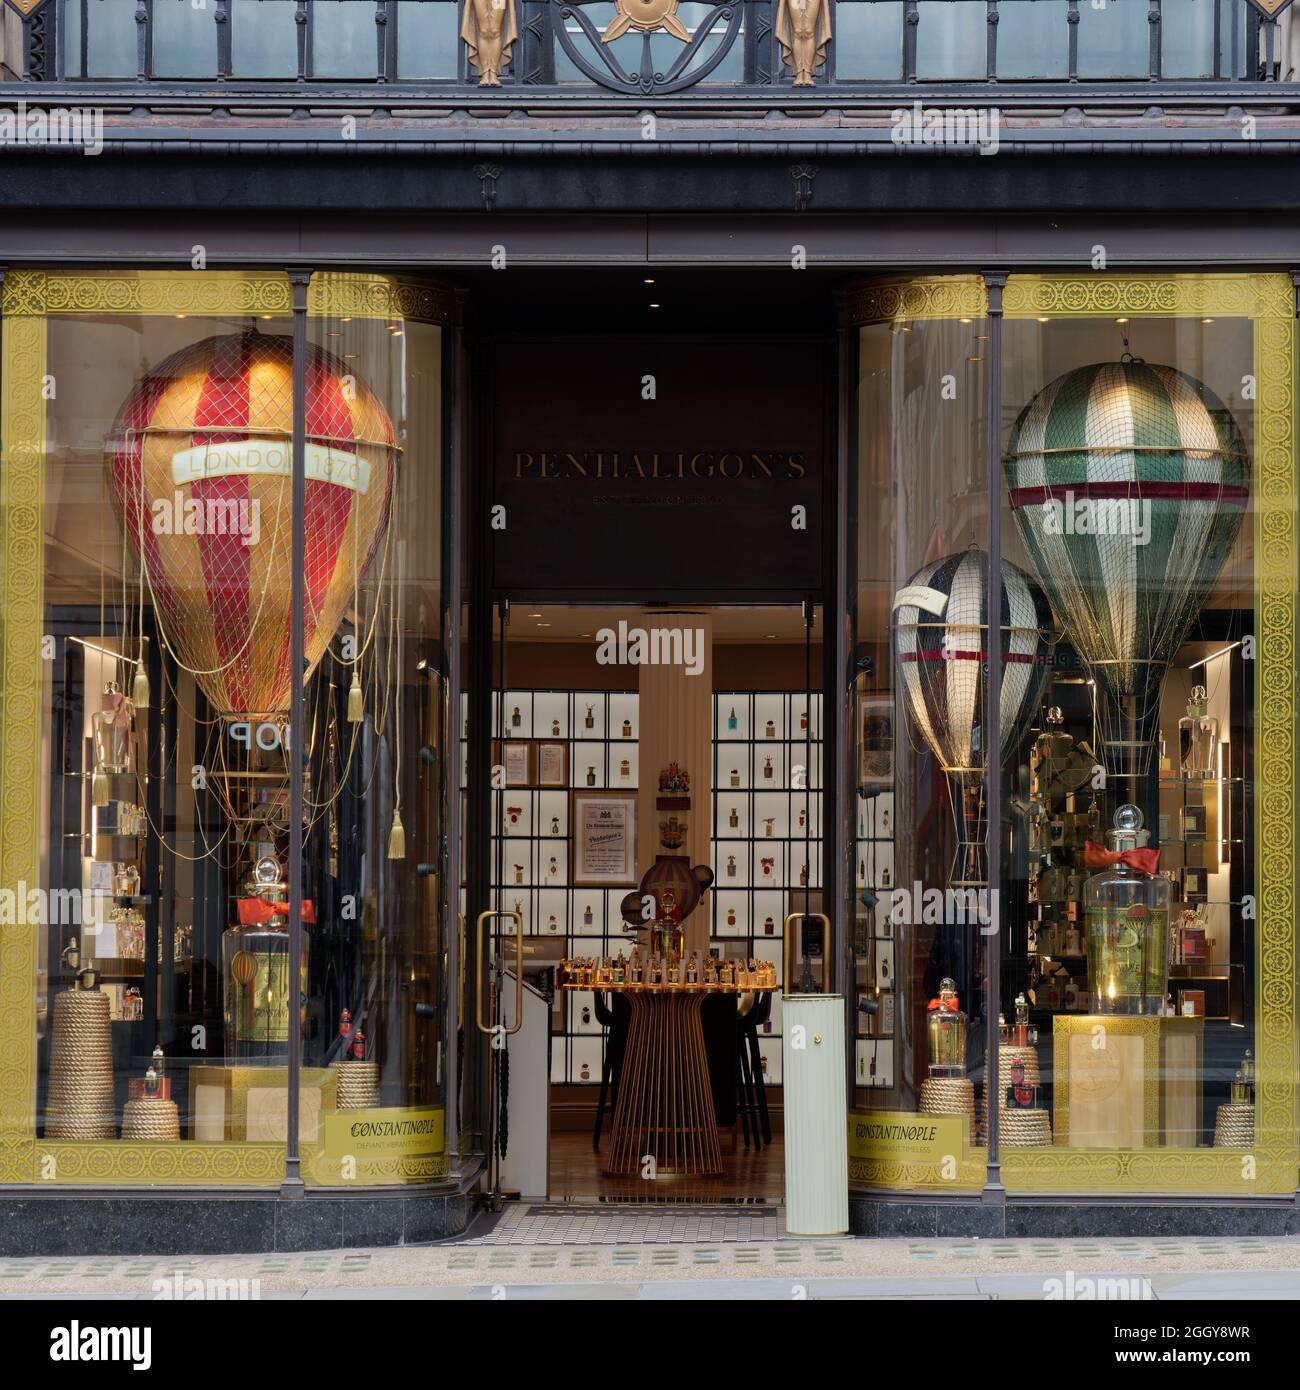 Londres, Grand Londres, Angleterre, août 24 2021: Penhaligon's parfumerie House sur Regent Street avec air chaud ballon style décoration dans la fenêtre de magasin. Banque D'Images